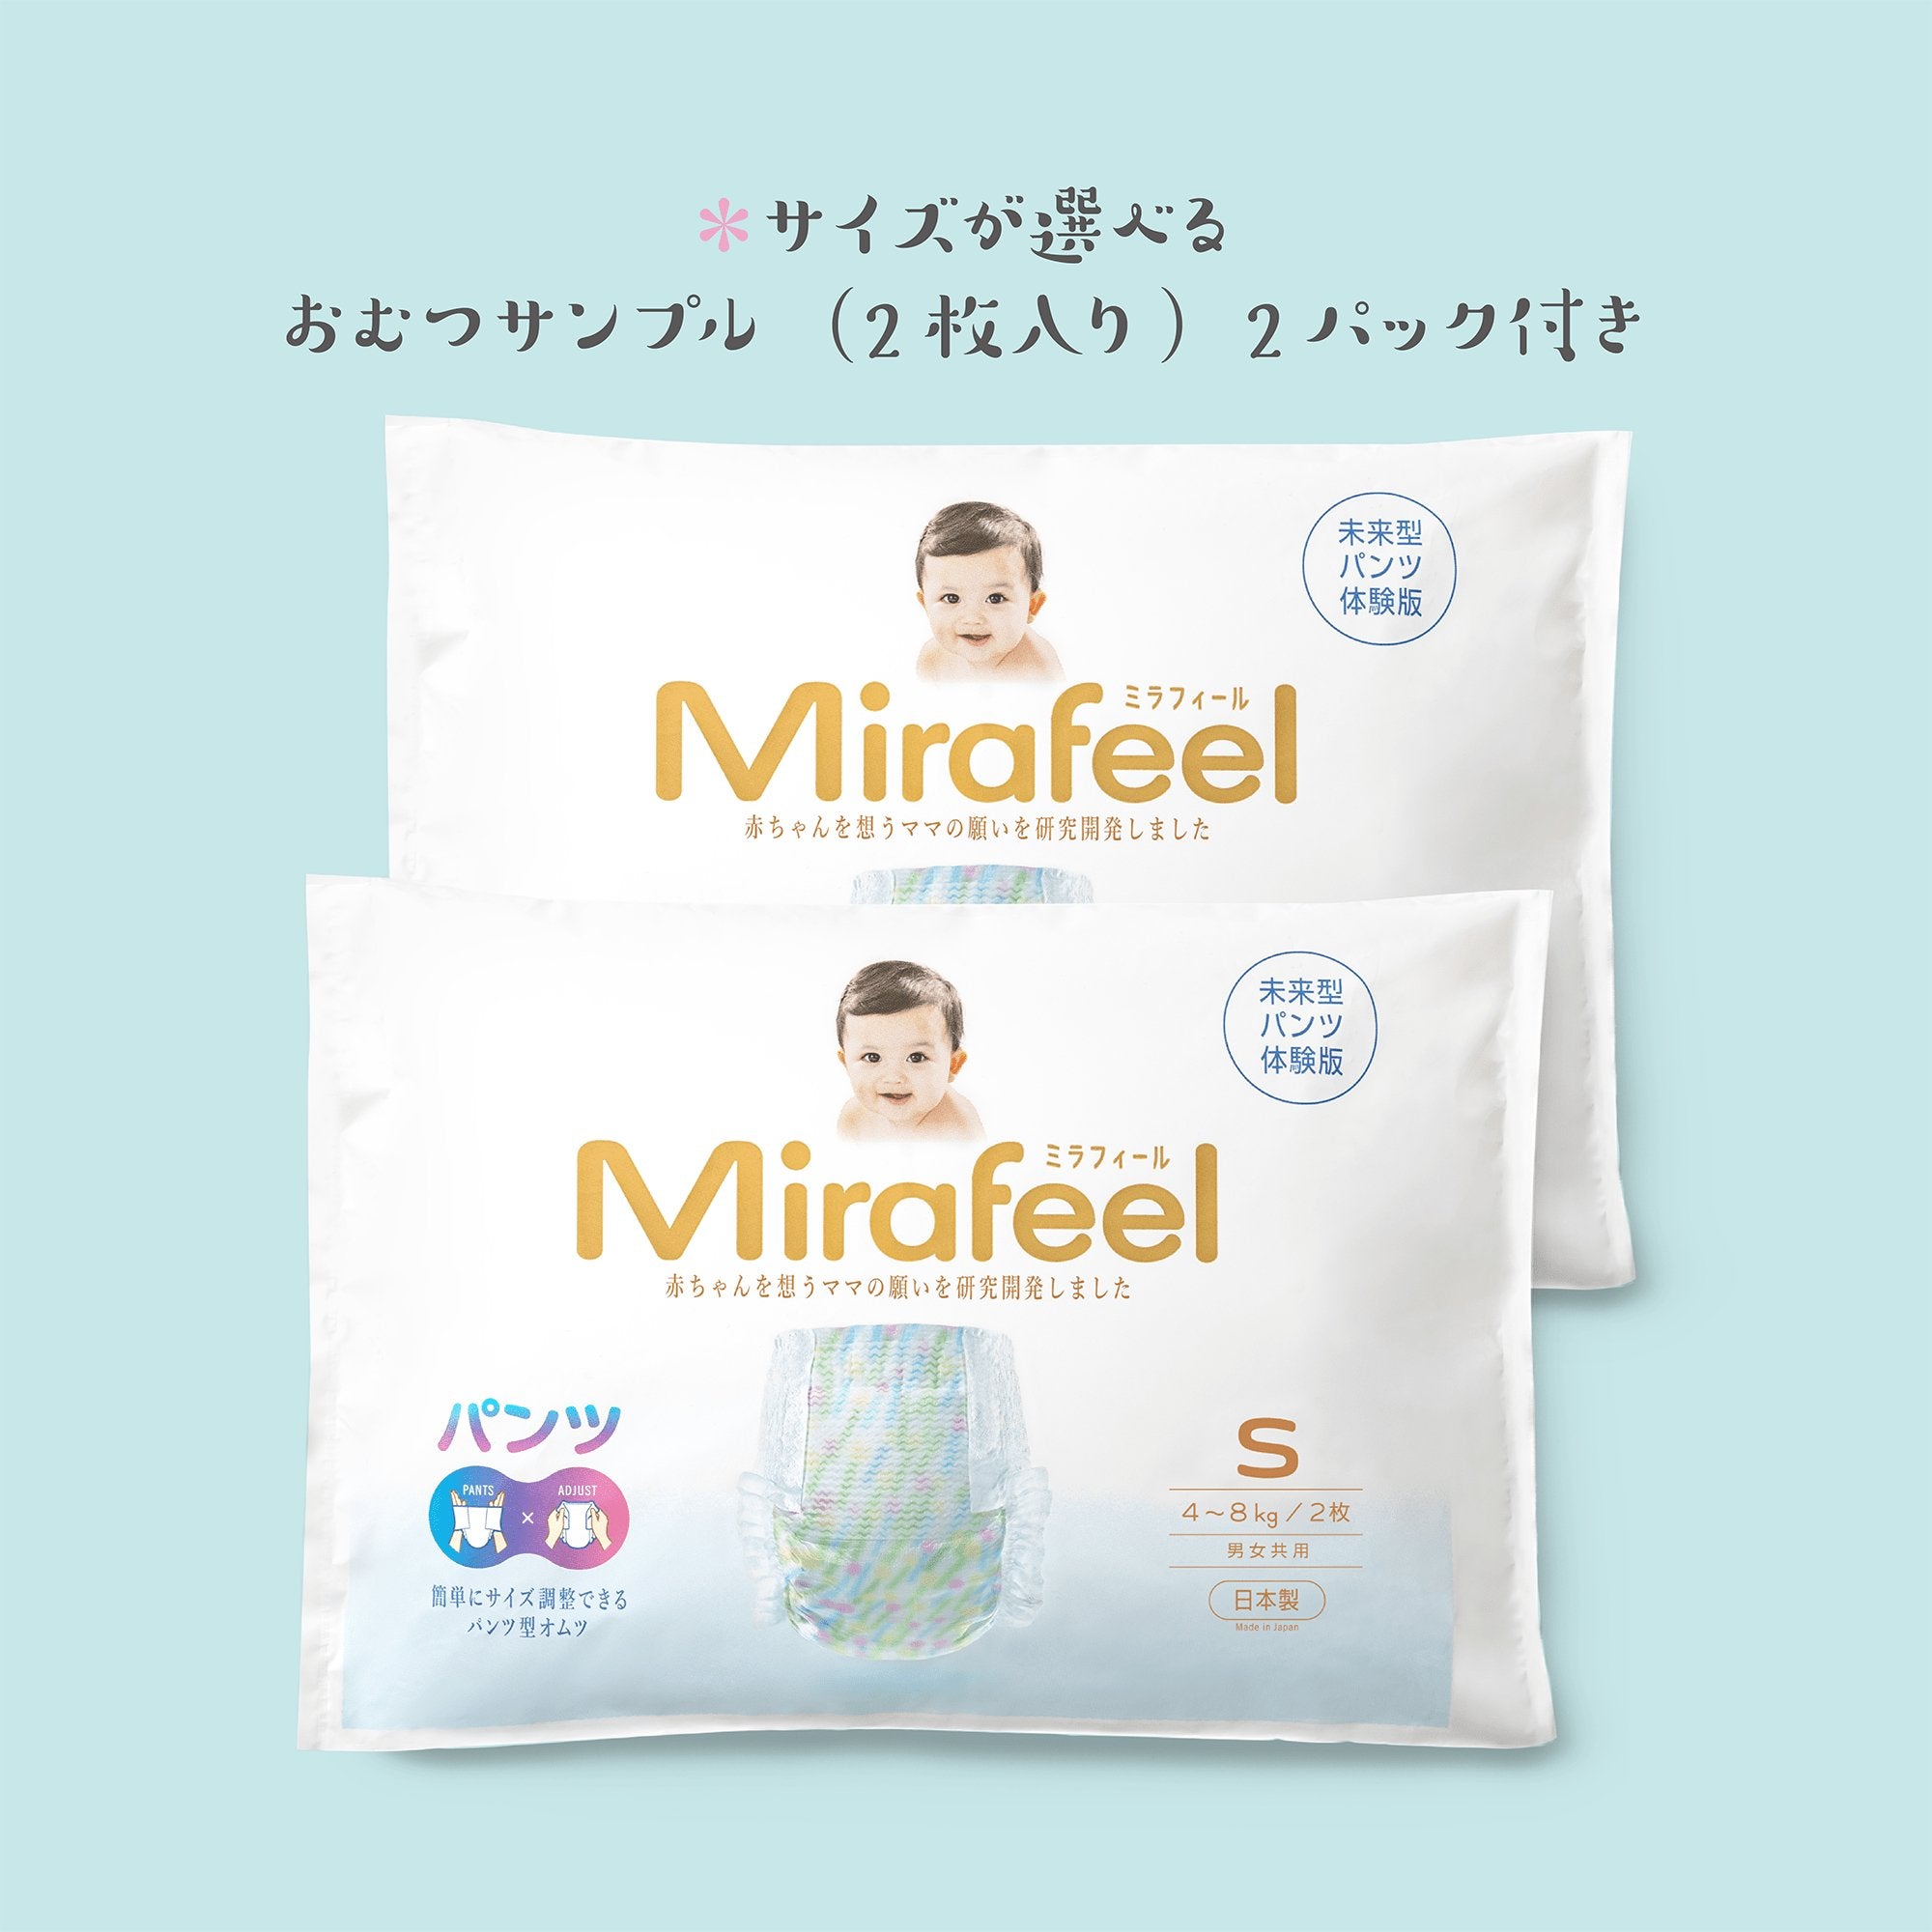 Mirai(未来)box - Mirafeel